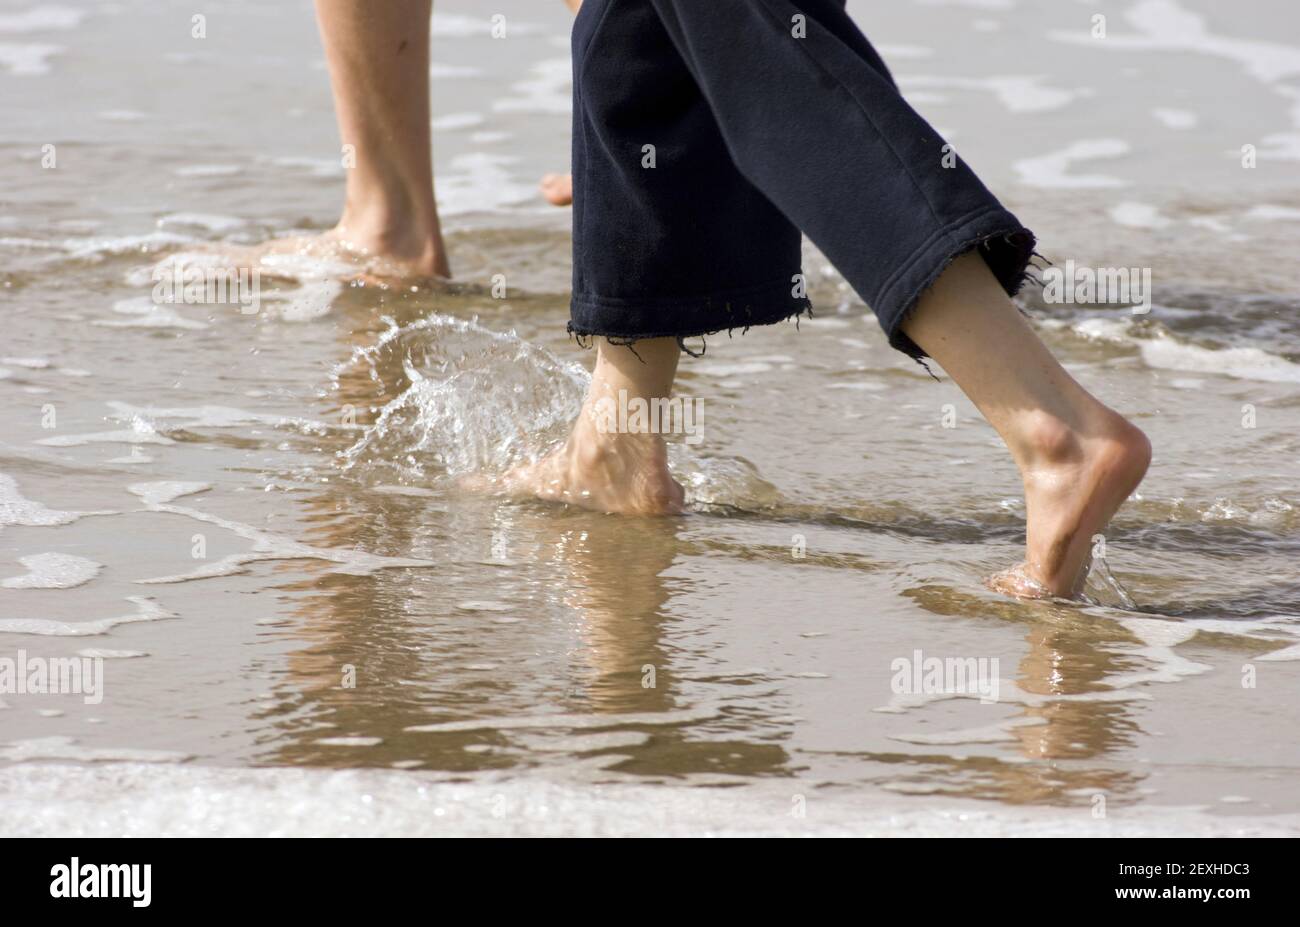 Les jeunes adolescents du bas des jambes marche sur la plage Banque D'Images